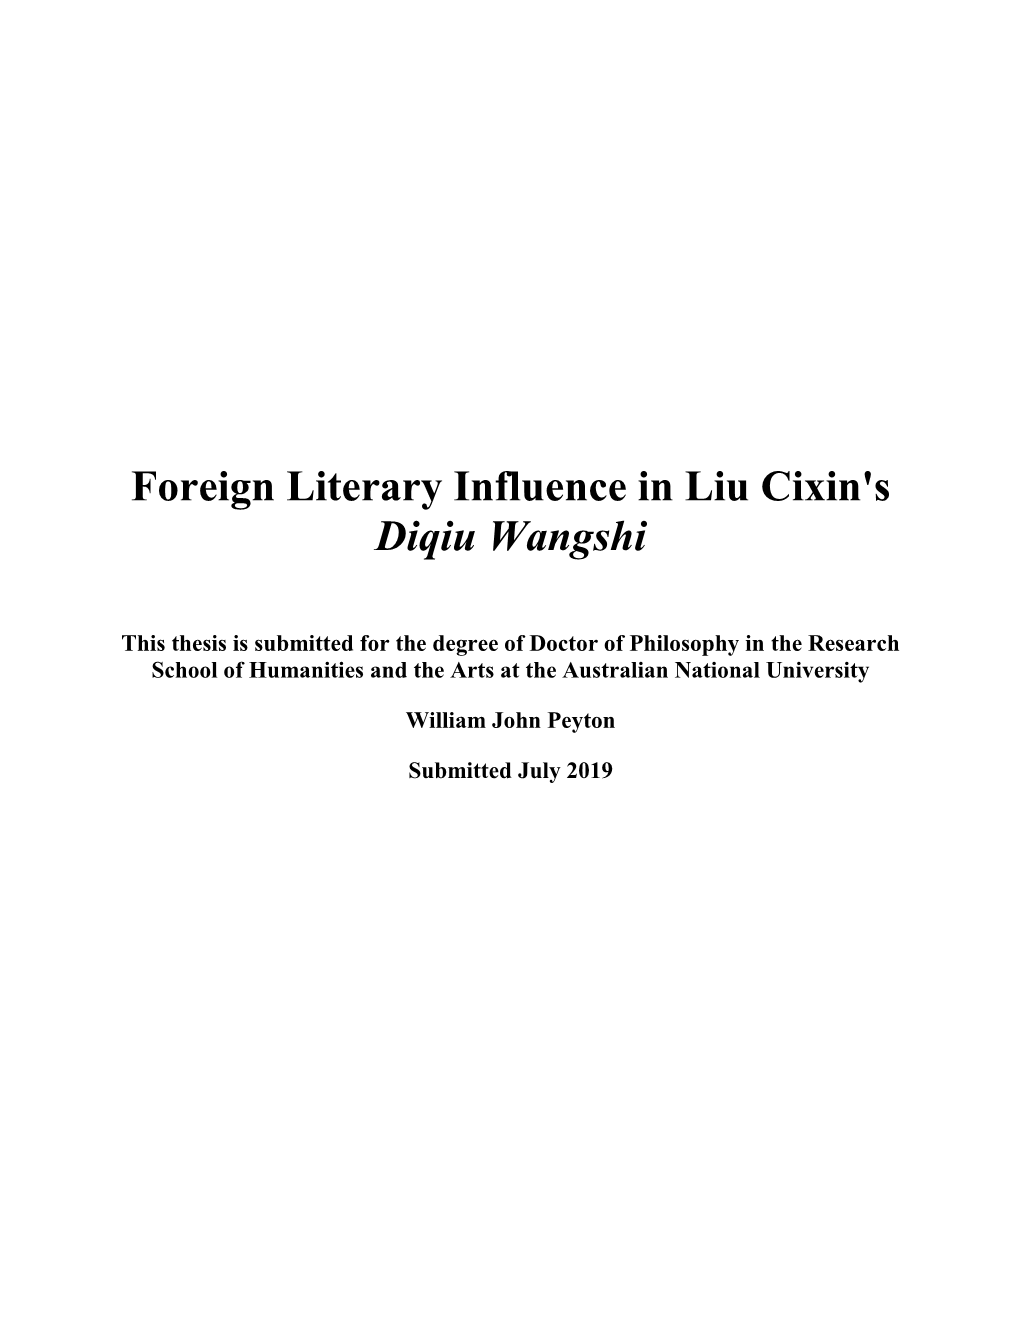 Foreign Literary Influence in Liu Cixin's Diqiu Wangshi